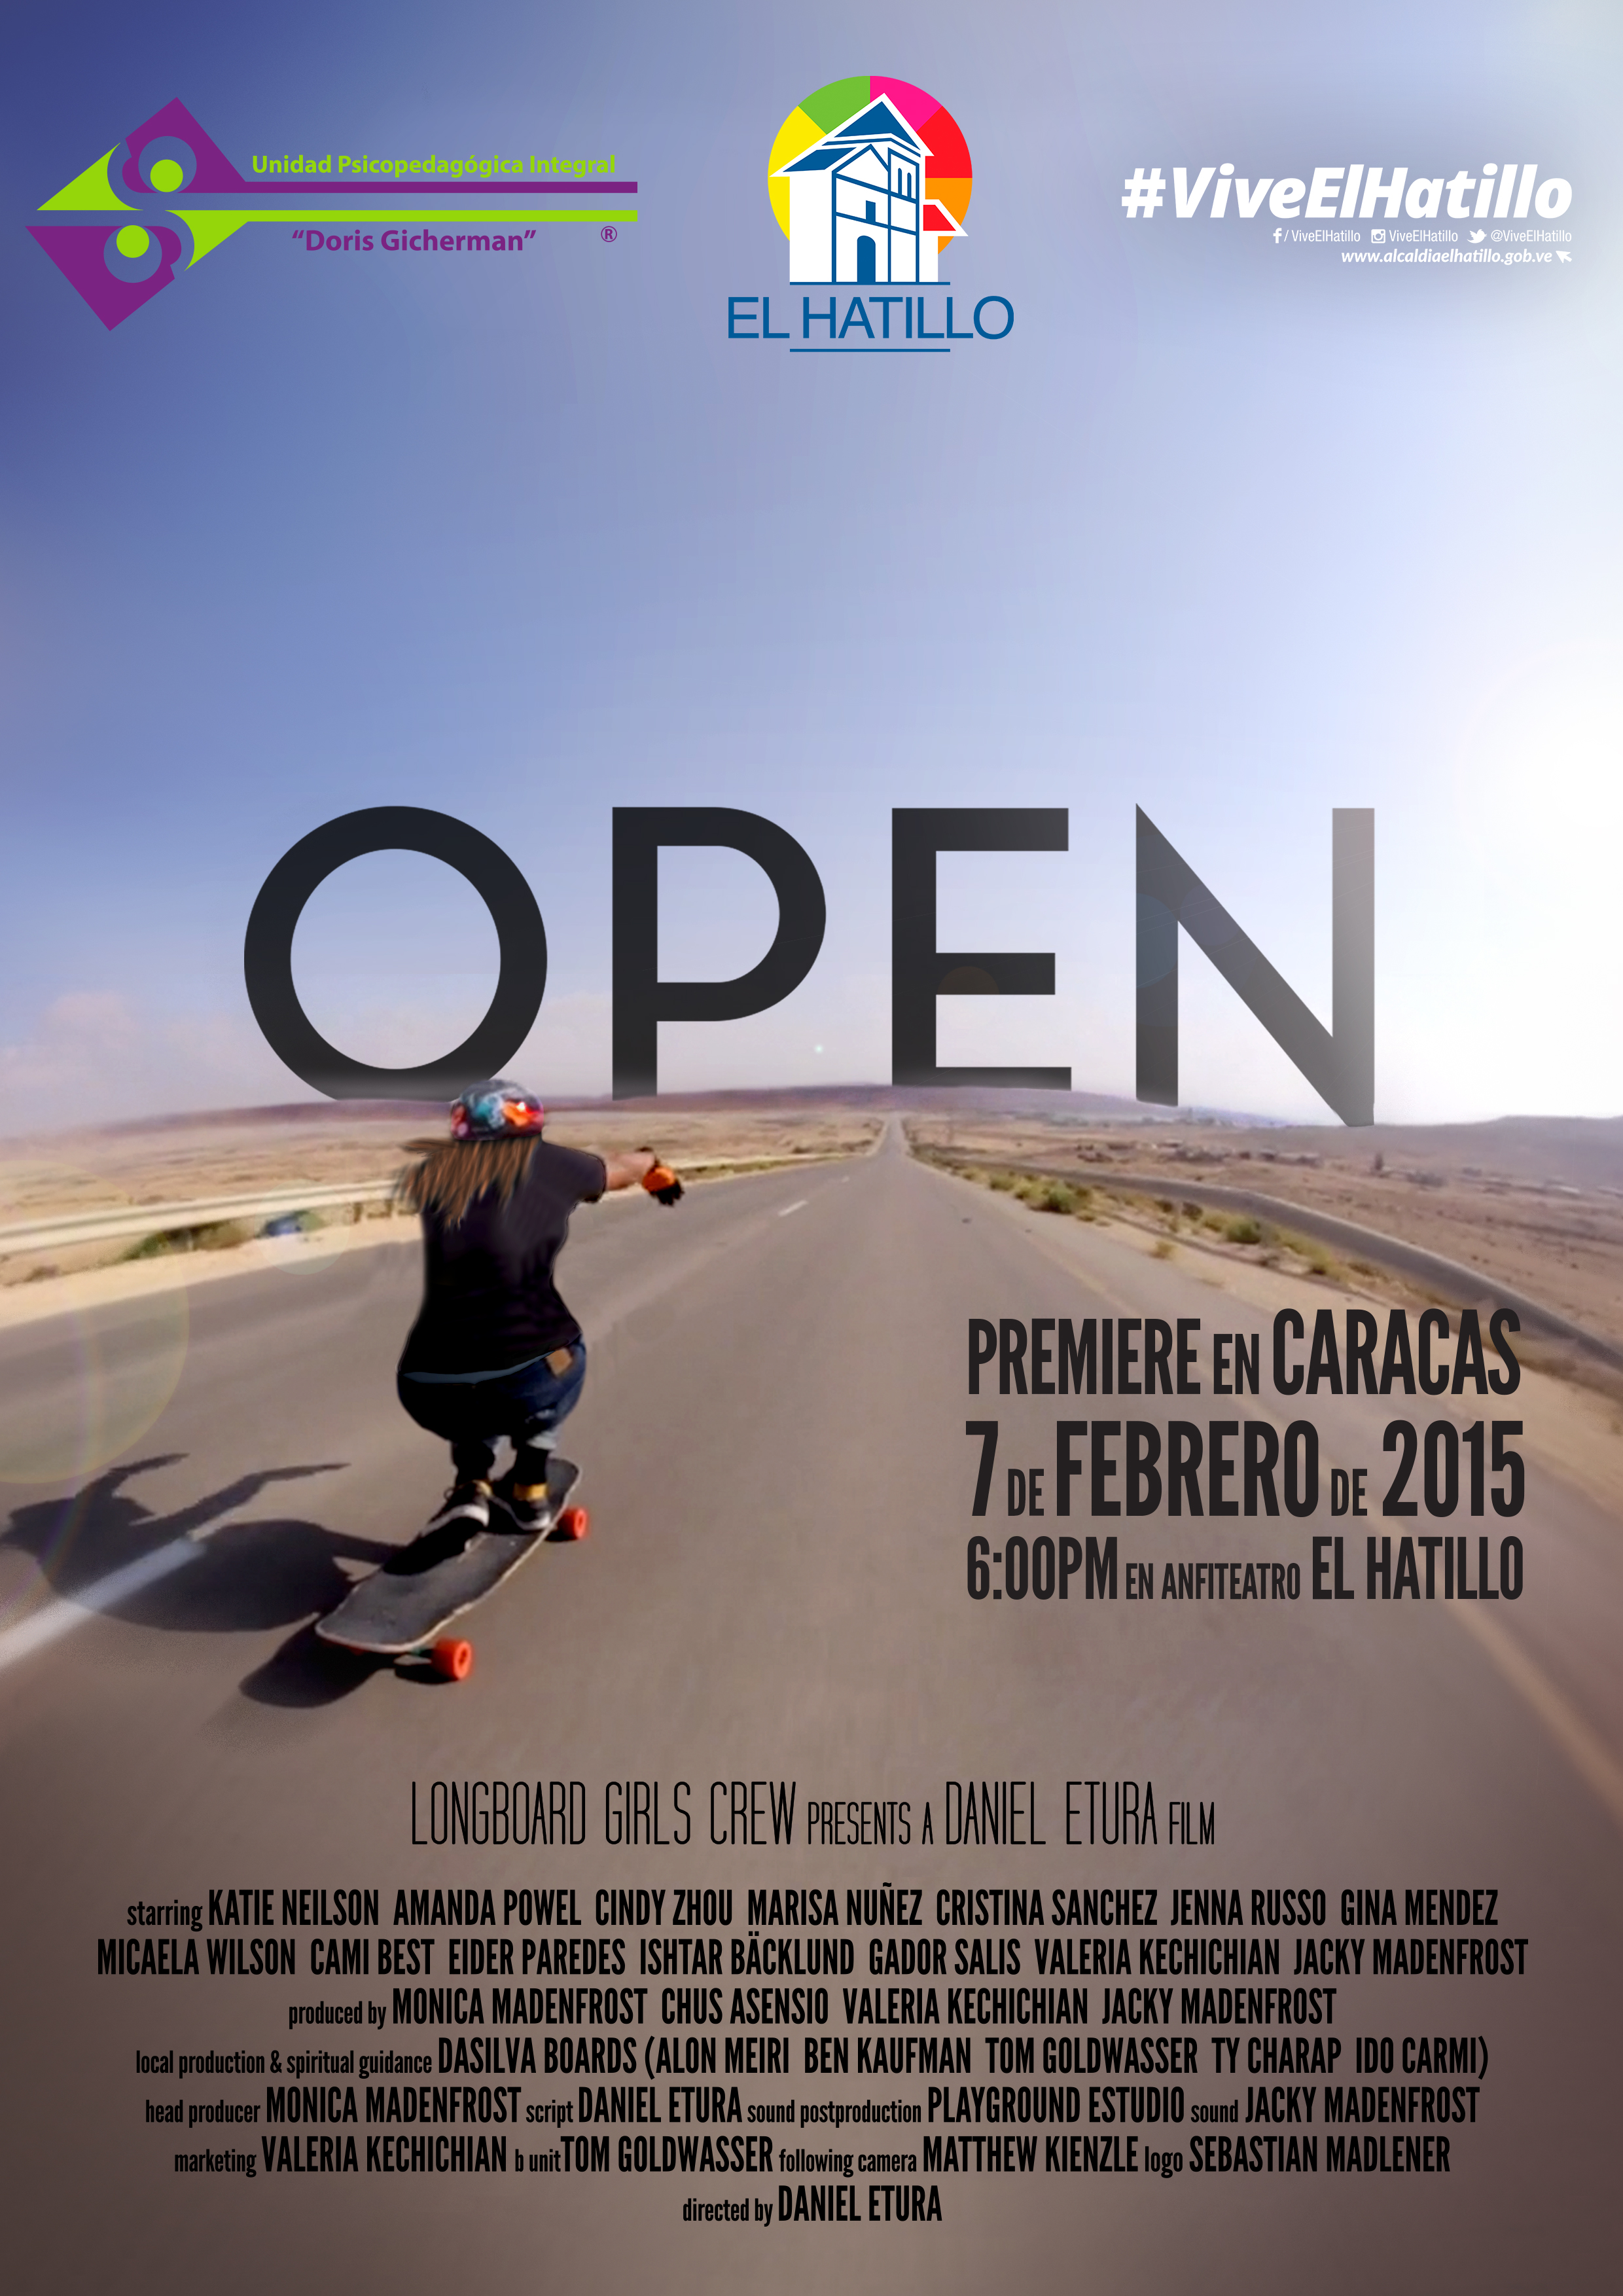 Open premiere en Caracas, longboard girls crew, longboarding